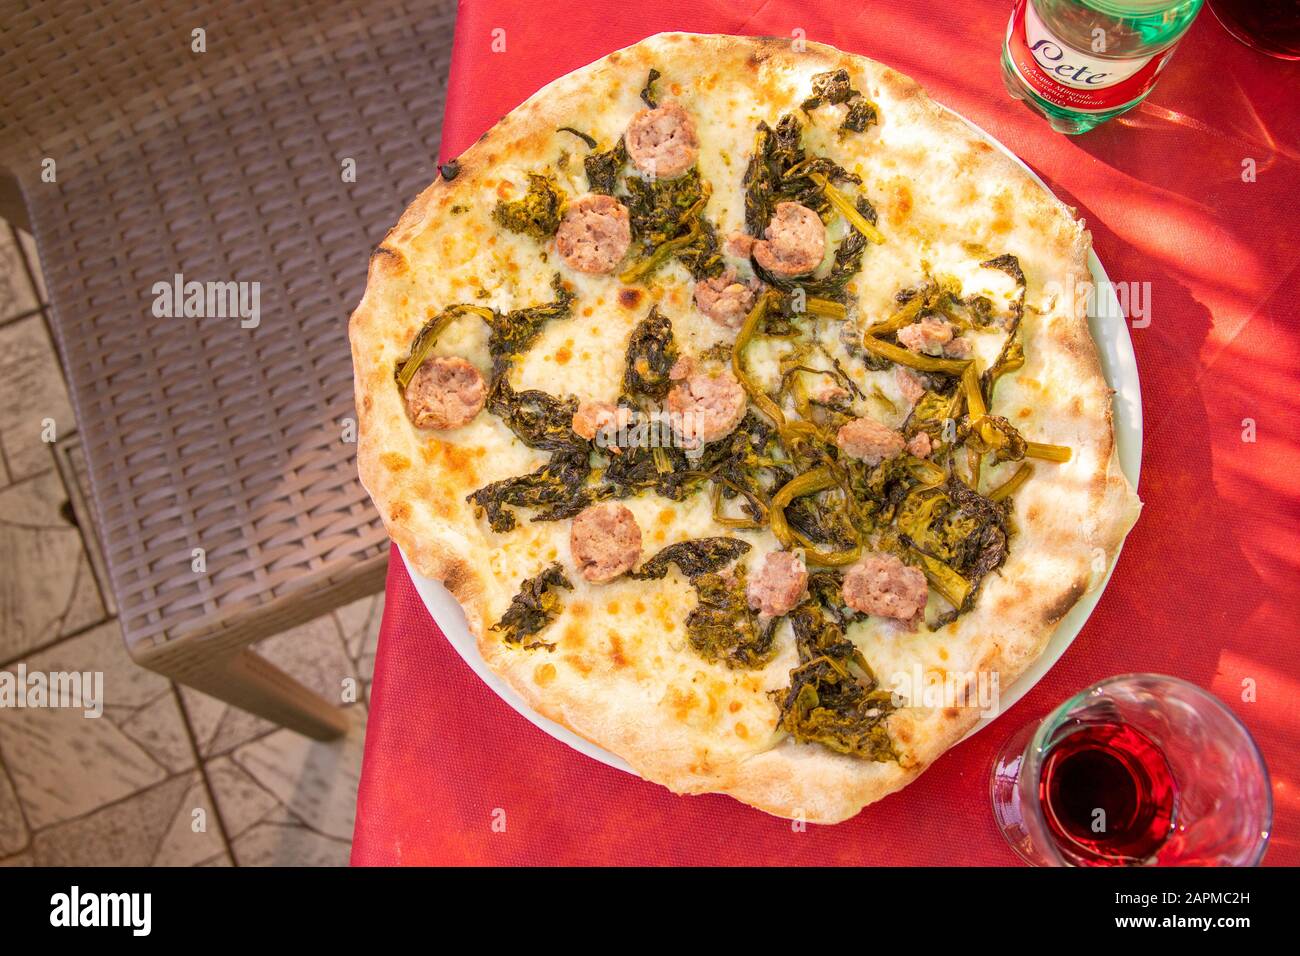 Friarelli and sausage pizza at Pizzeria Luna Caprese, Ercolano, Italy Stock Photo